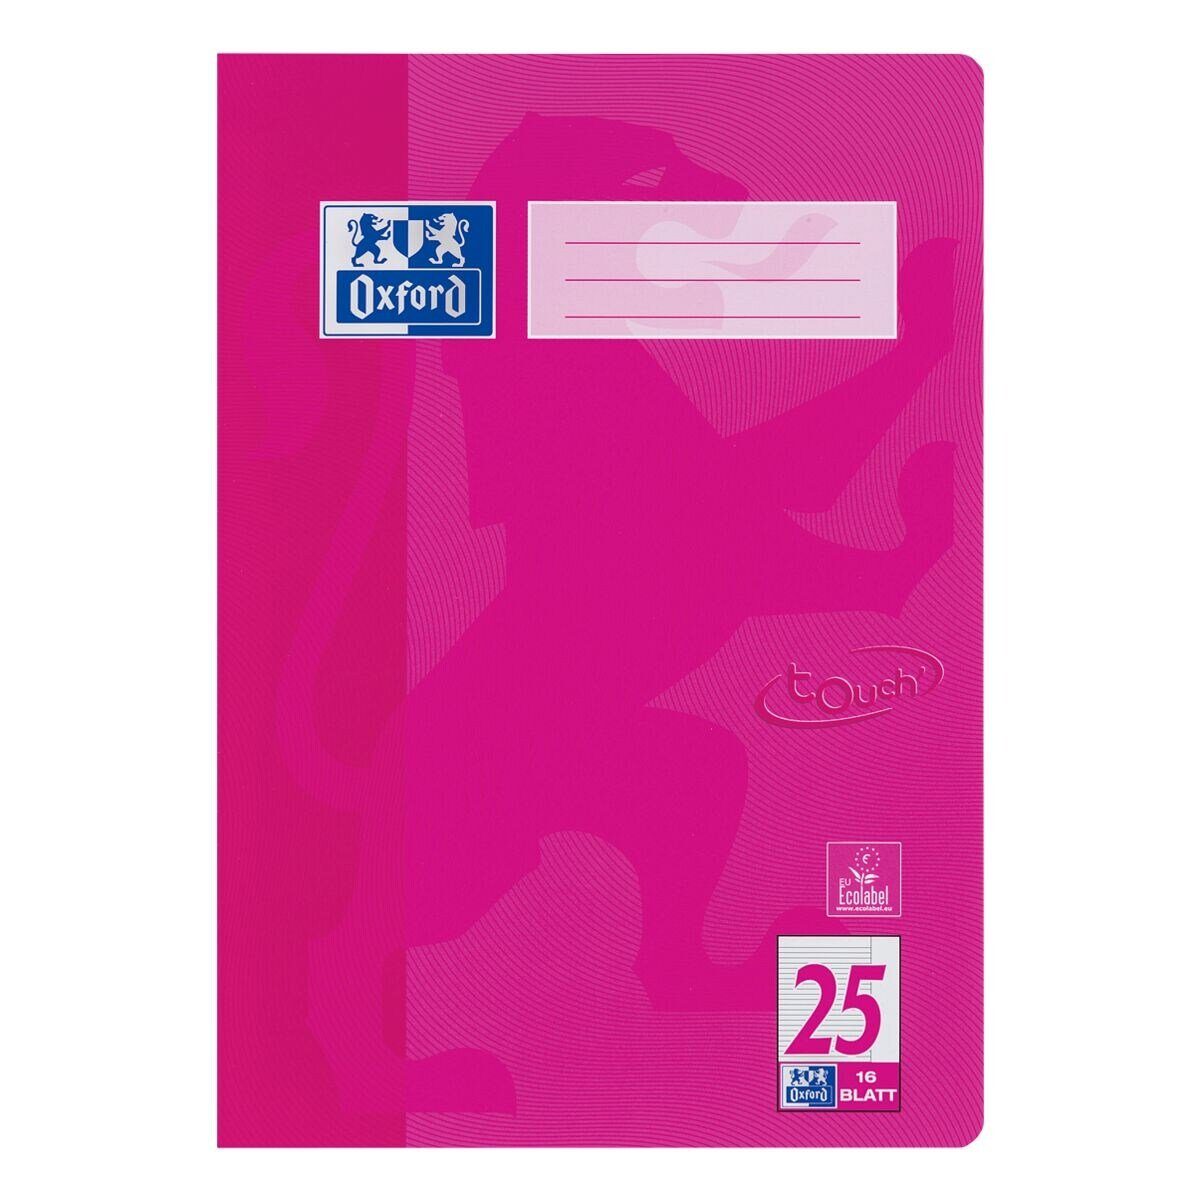 OXFORD Schulheft Touch, A4, liniert (Lineatur 25), Veredelung / Außenrand, ungelocht, 16 Blatt pink